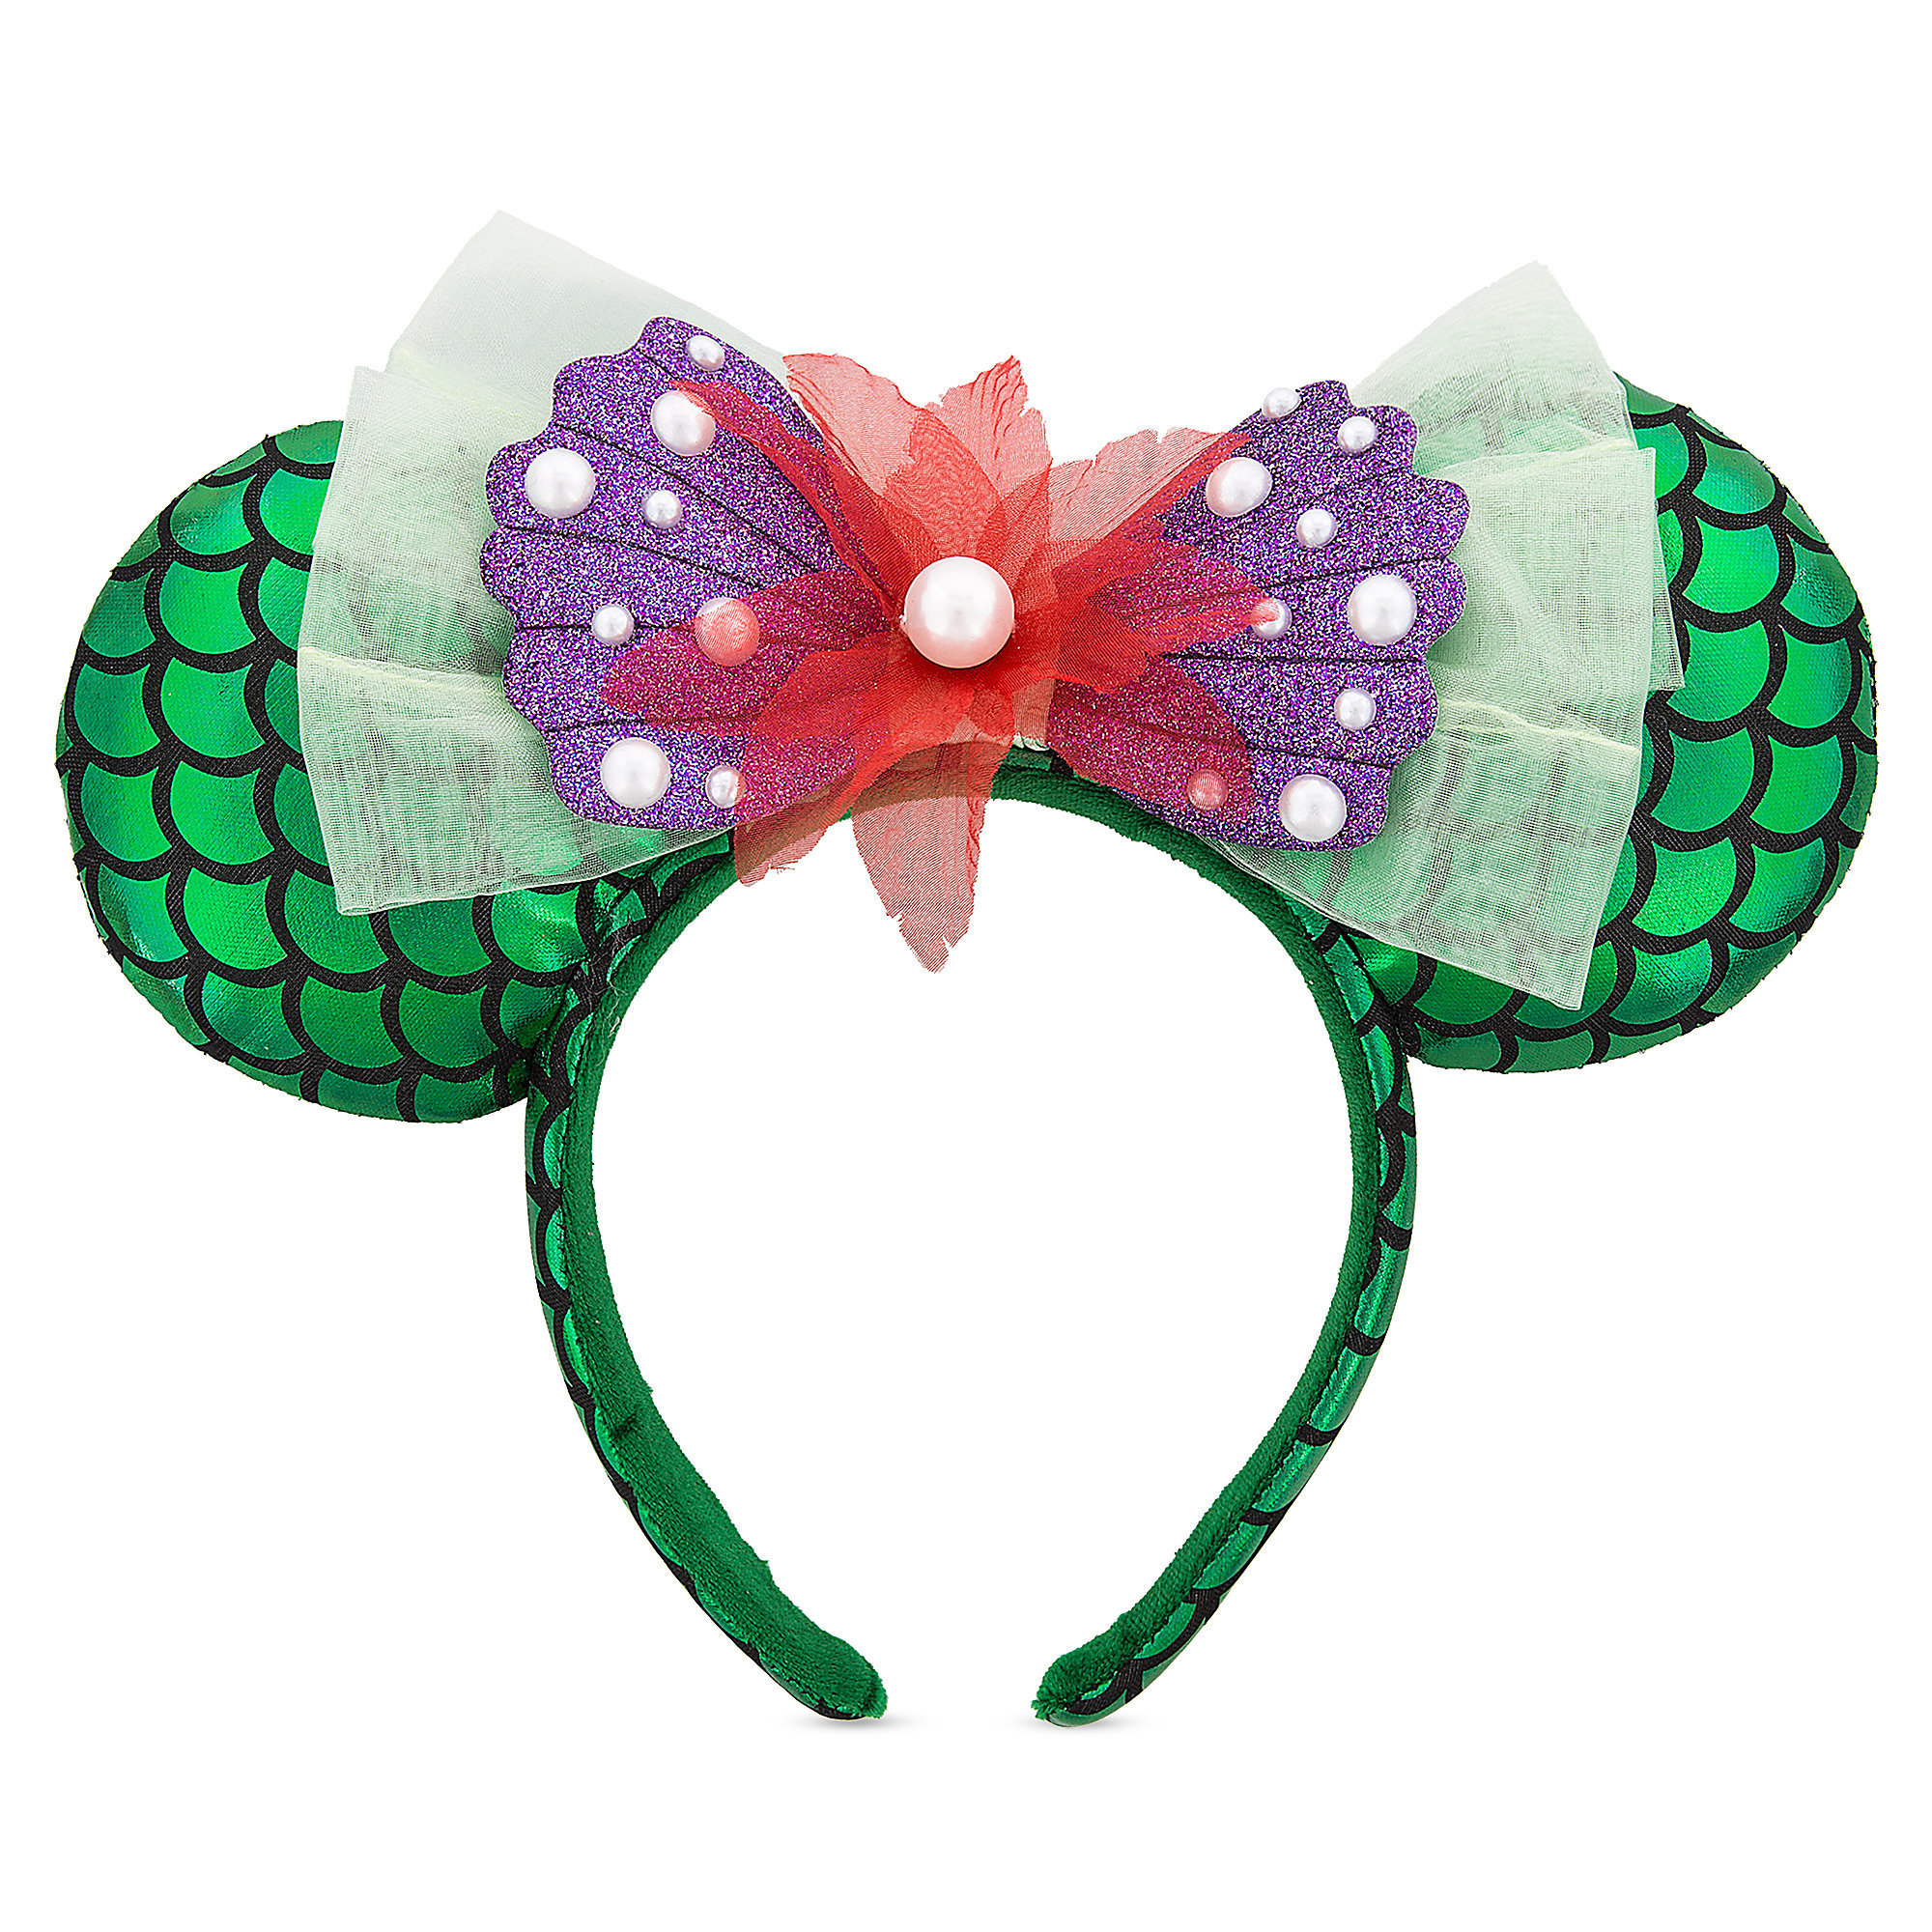 The Little Mermaid Inspired Disney Ears-Mickey Ears-Ariel Disney Ears 